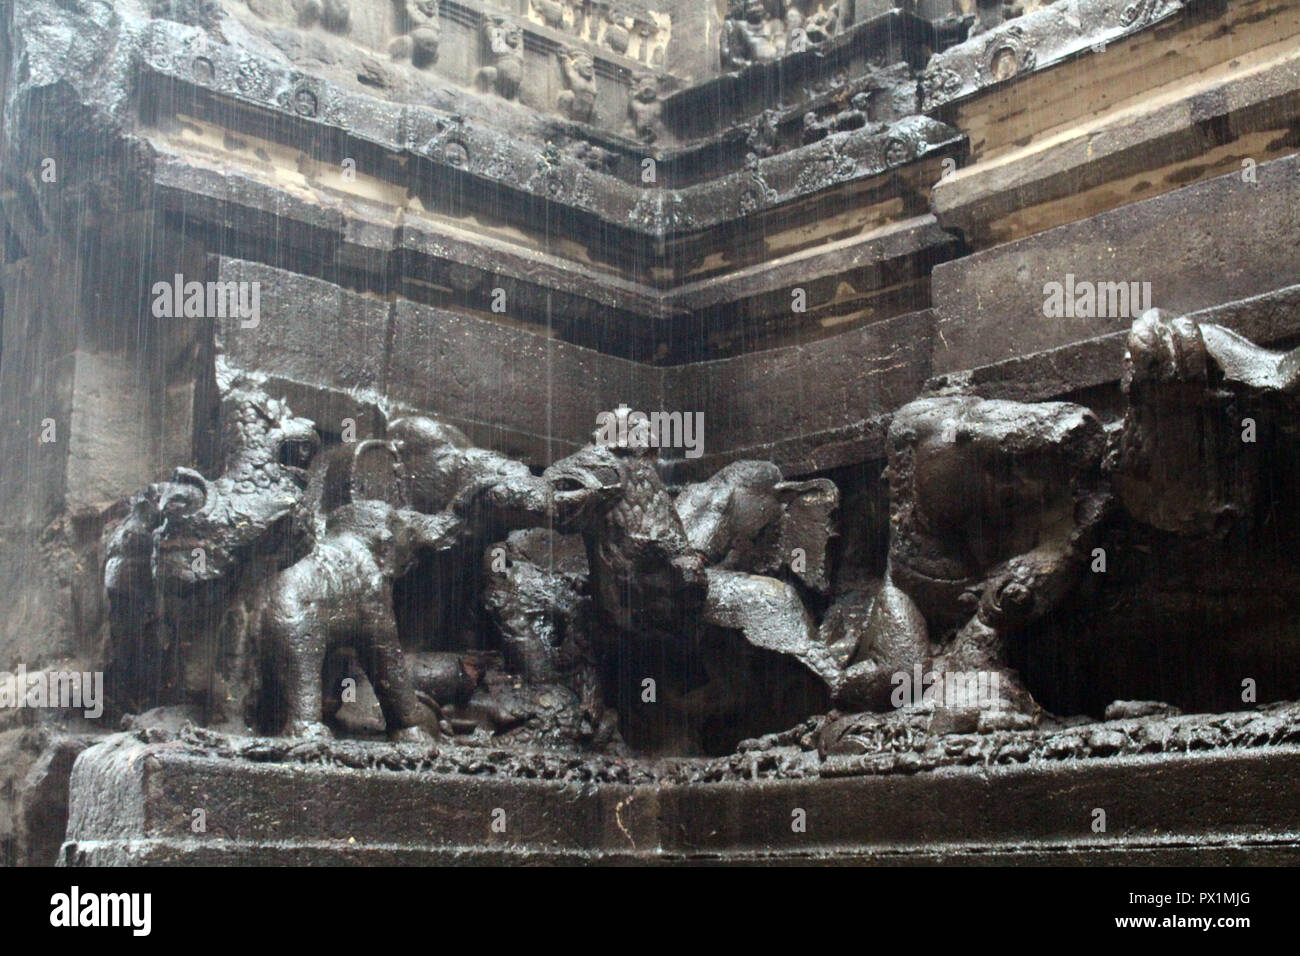 Le unbeliavable détails du Temple de Kailasa grottes d'Ellora, le rock-cut temple monolithique. Prises en Inde, août 2018. Banque D'Images